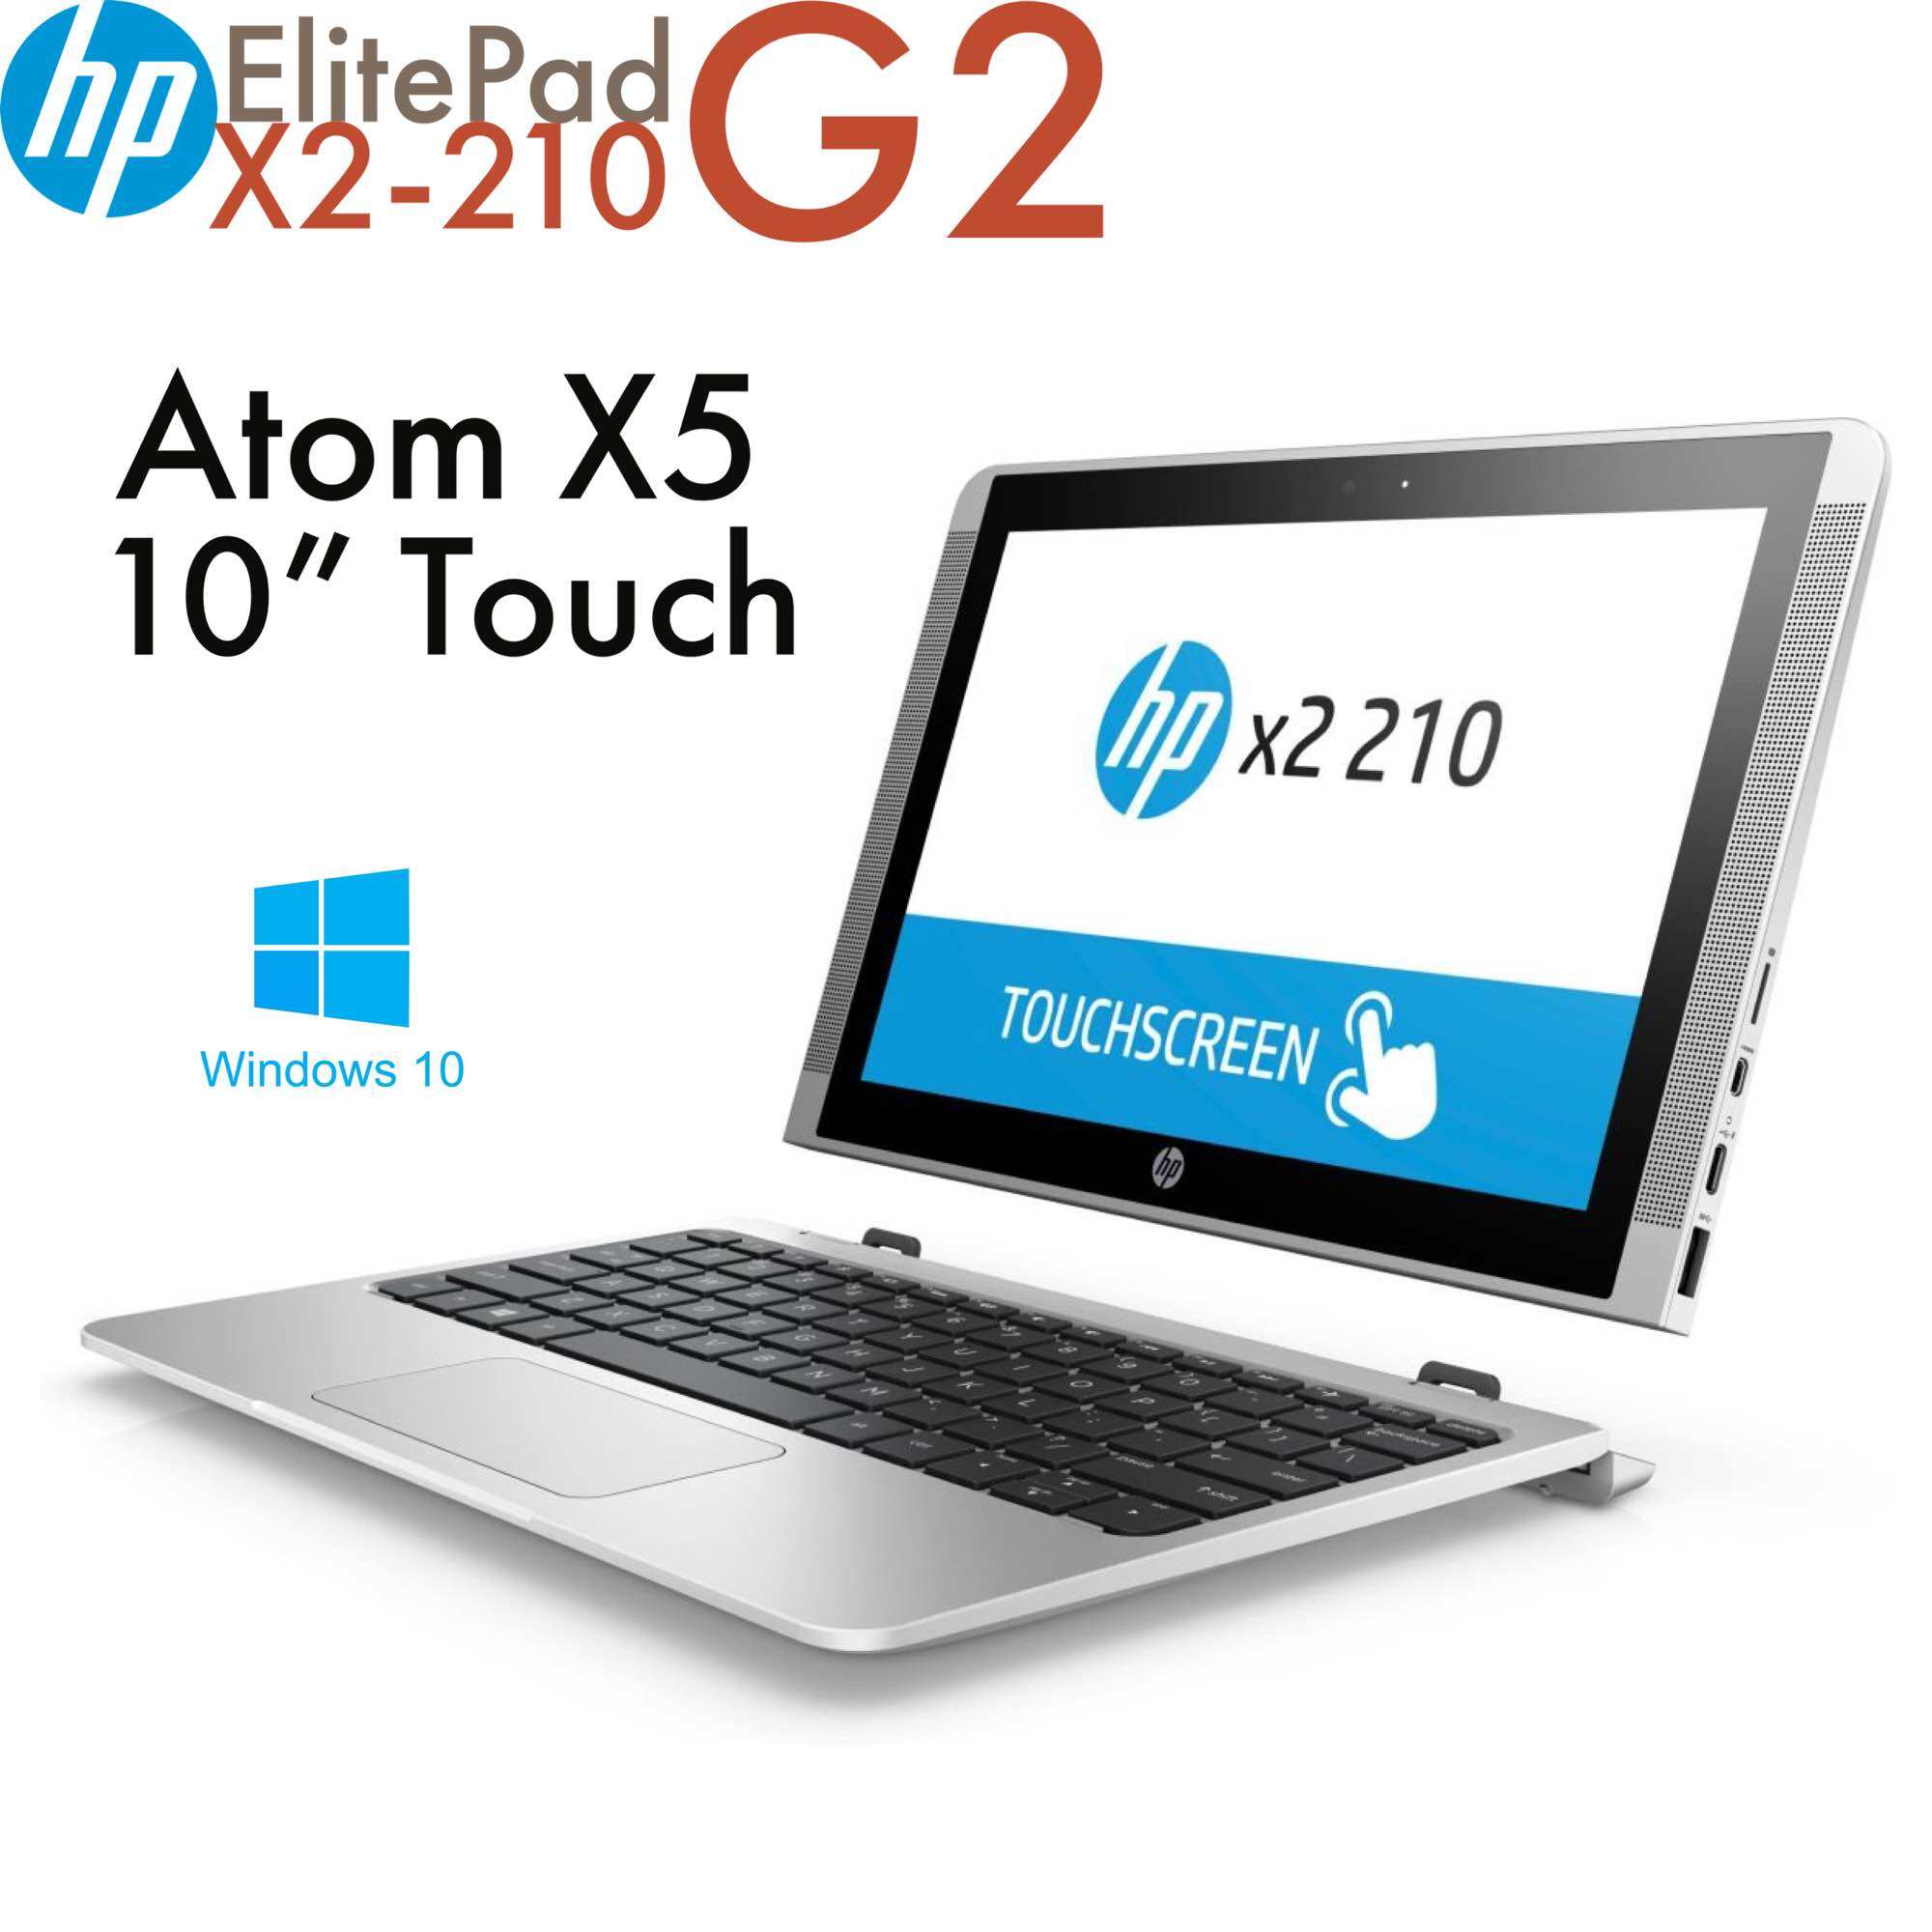 Laptop 2 trong 1 HP Elite X2-210G2 Atom x5-8350, 2gb ram, 32gb SSD, màn 10.1” HD cảm ứng bàn phím tháo rời